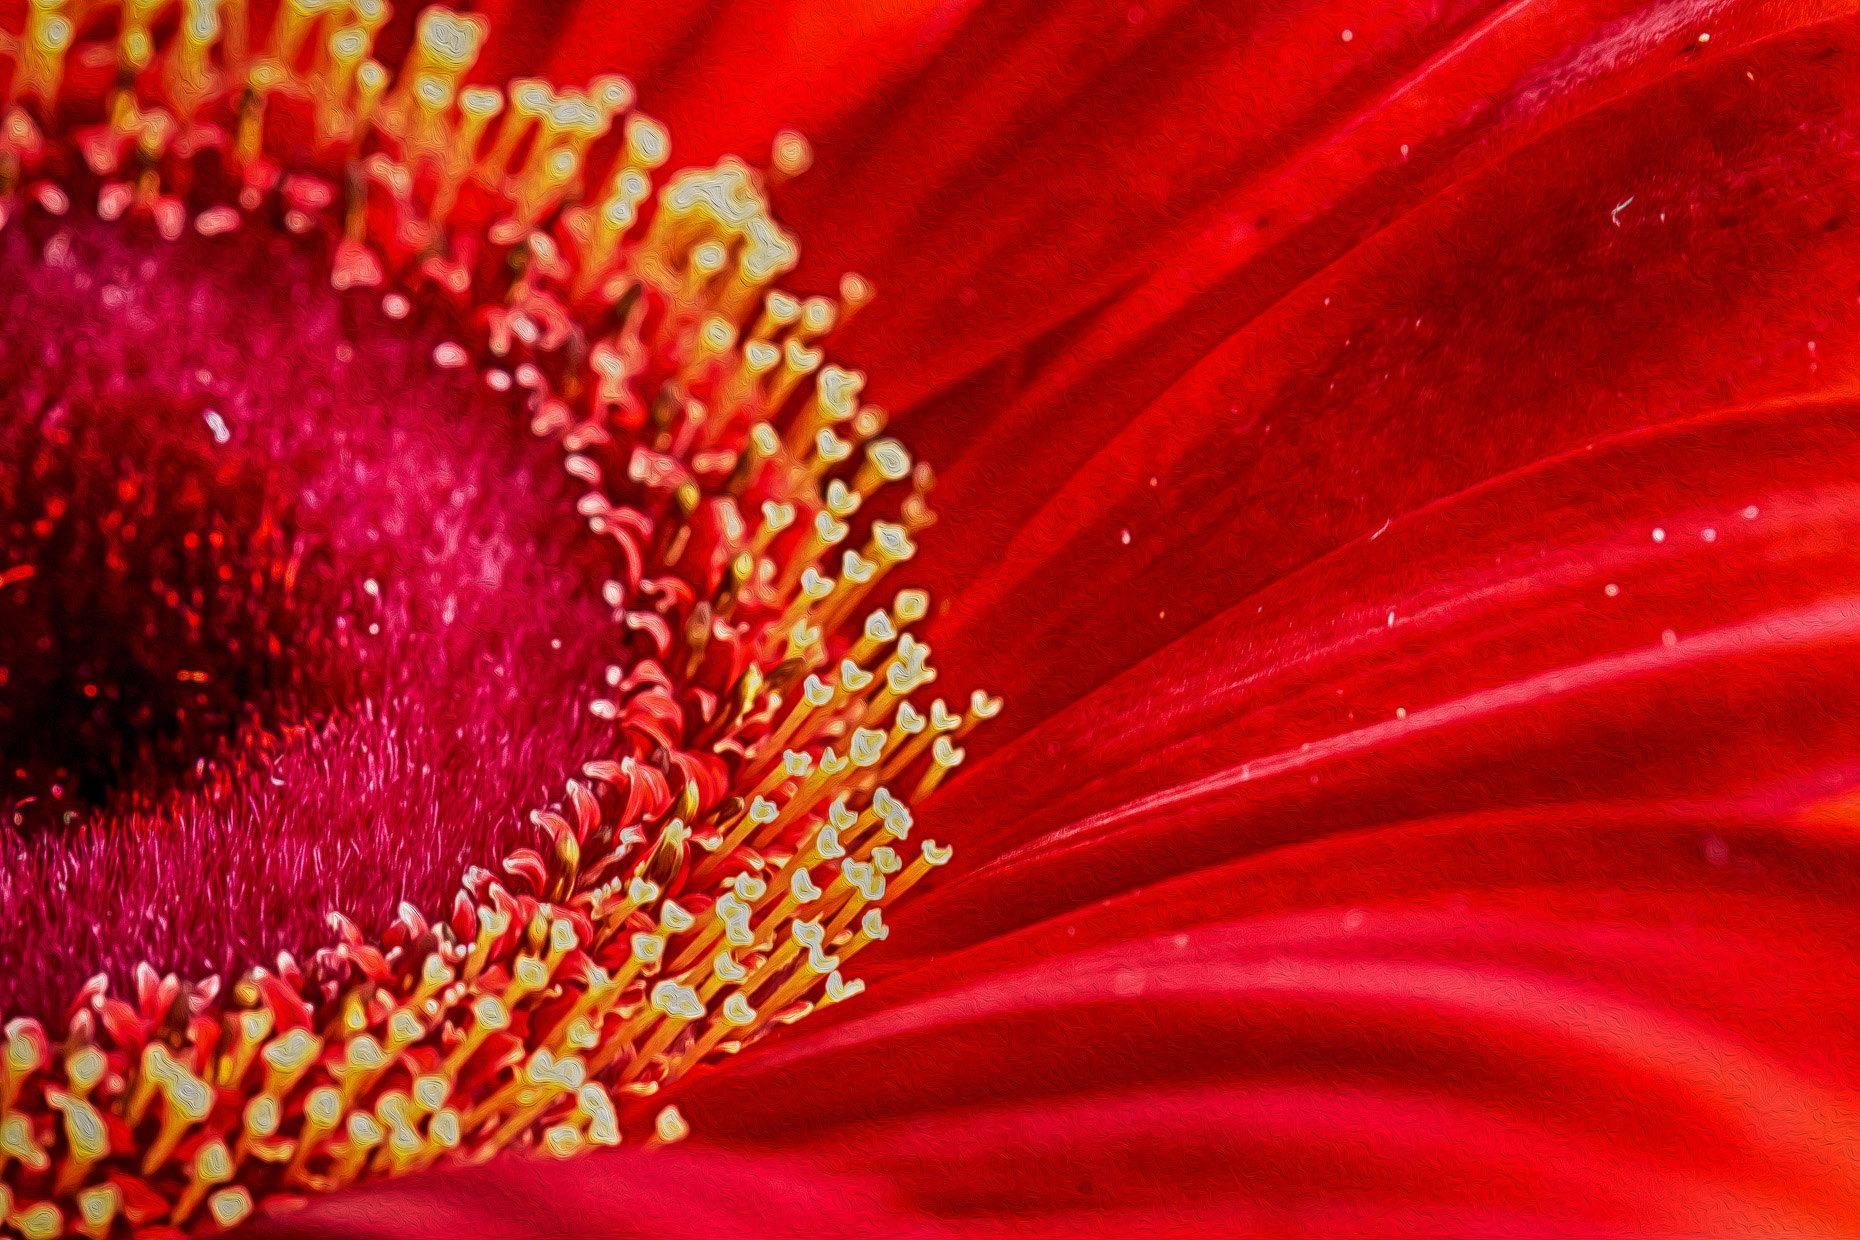 Vivid Red Gerber Daisy Flower #2